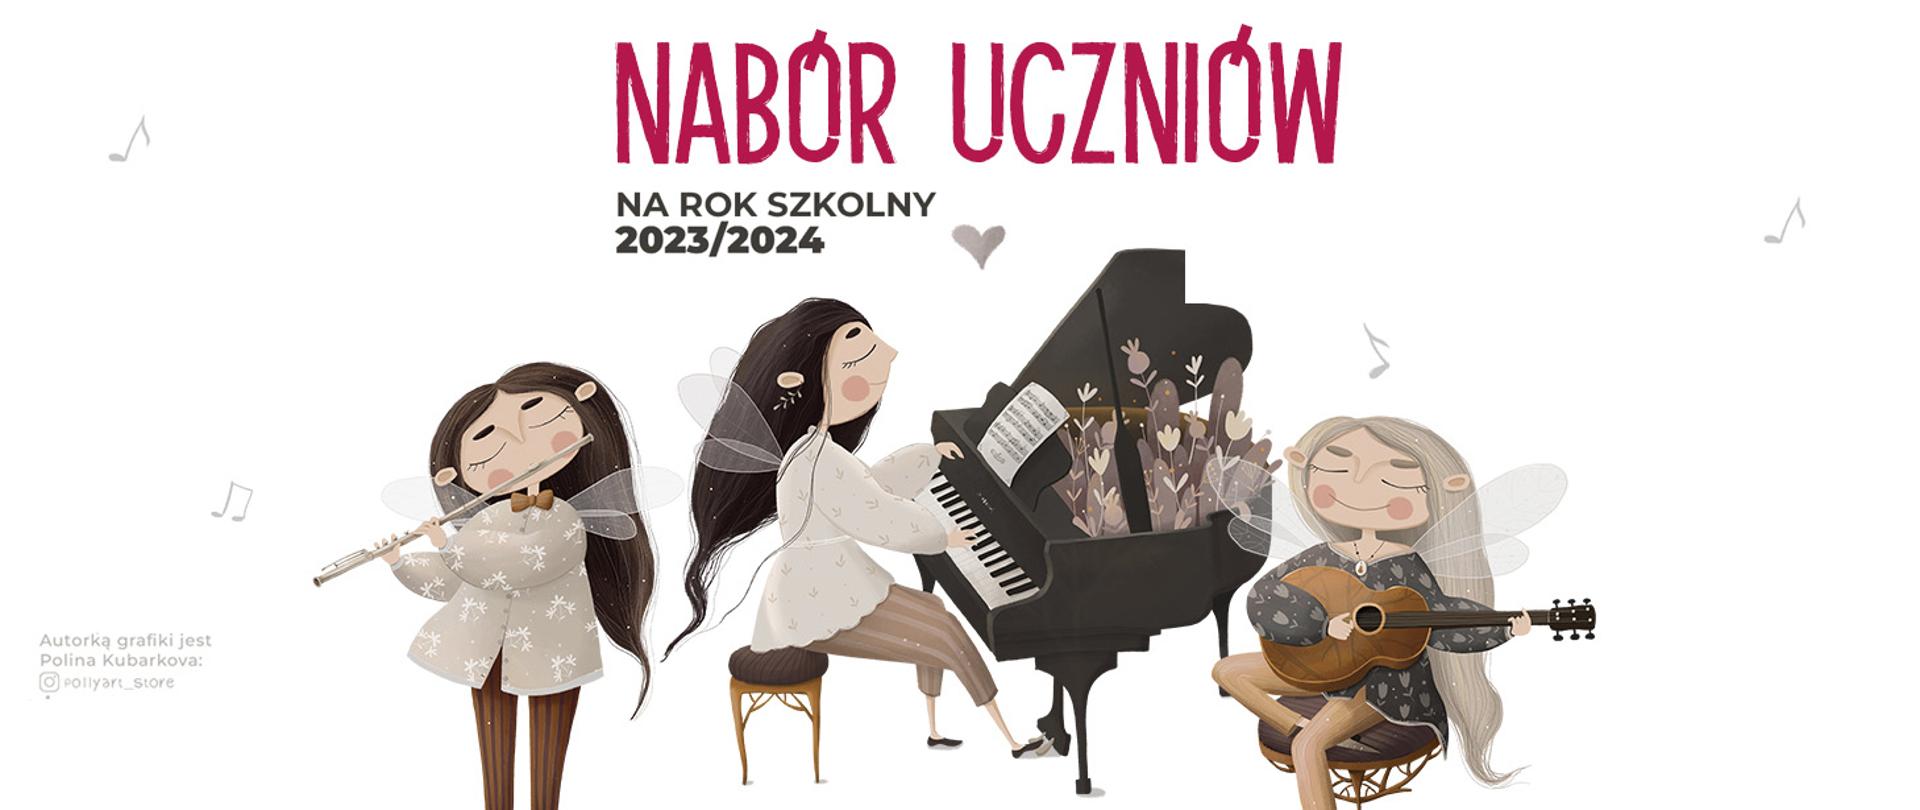 Baner na białym tle, na środku animowane postacie grające na instrumentach od lewej kolejno: dziewczyna grająca na flecie, dziewczyna grająca na fortepianie, dziewczyna grająca na gitarze. Na górze napis: Nabór uczniów na rok szkolny 2023/2024